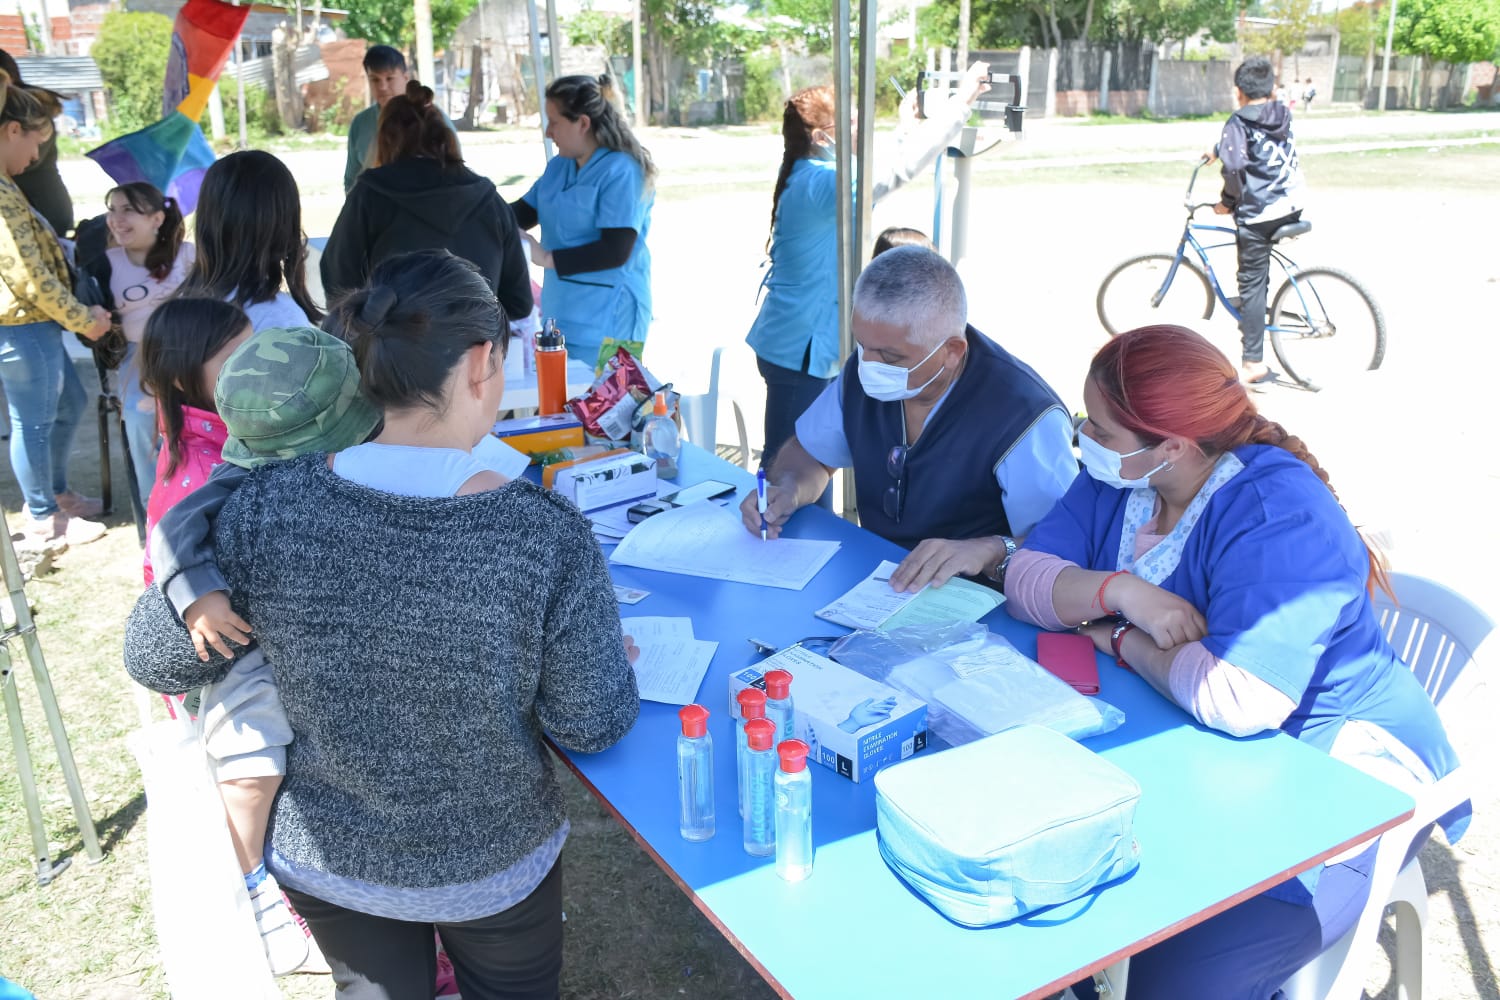 JORNADA DE SALUD / Operativo de vacunación gratuita, promoción de la salud y política de género